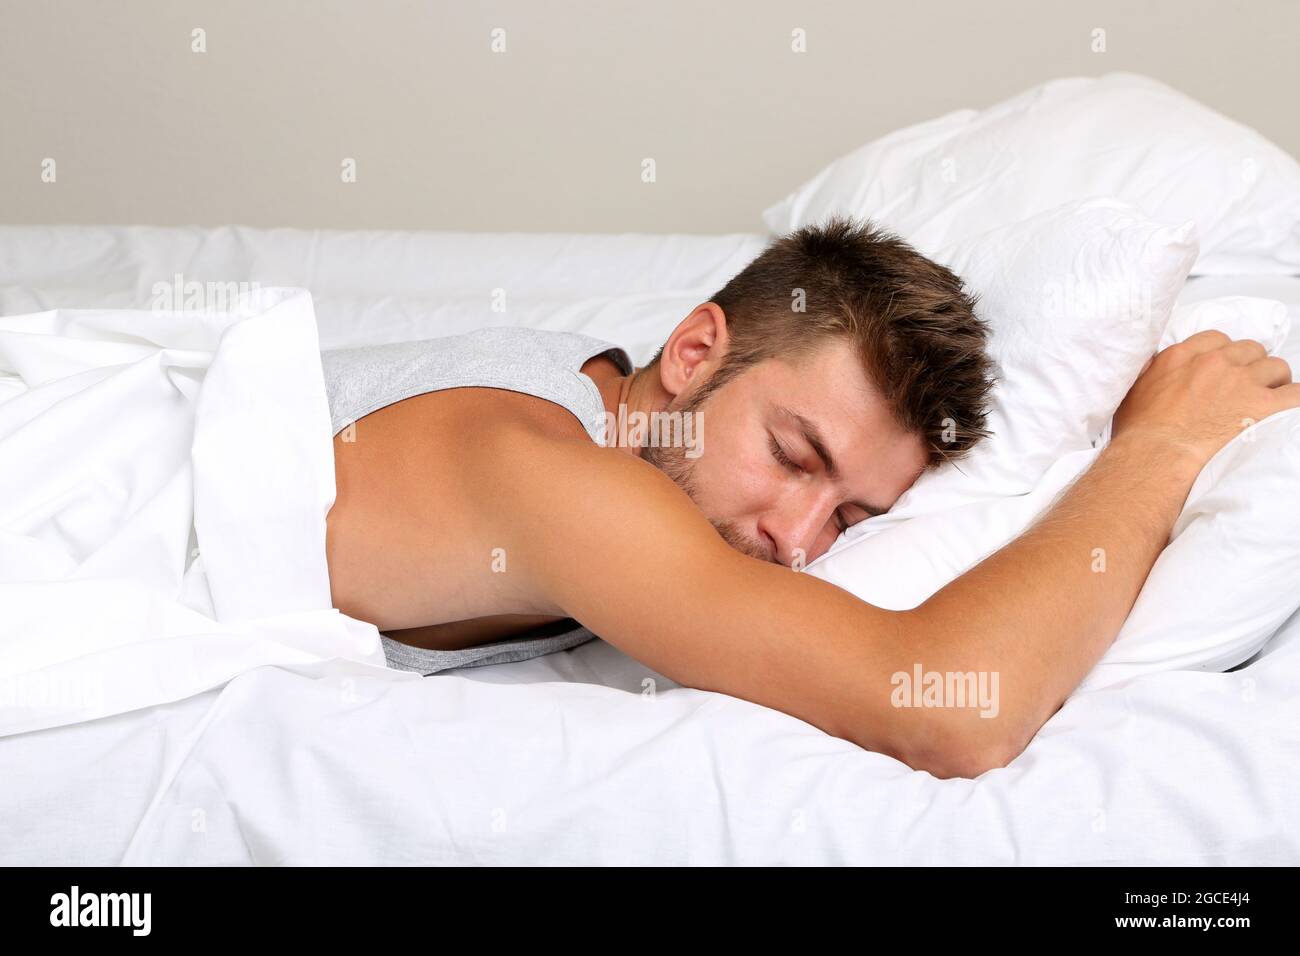 Hübscher junger Mann im Bett Stockfotografie - Alamy